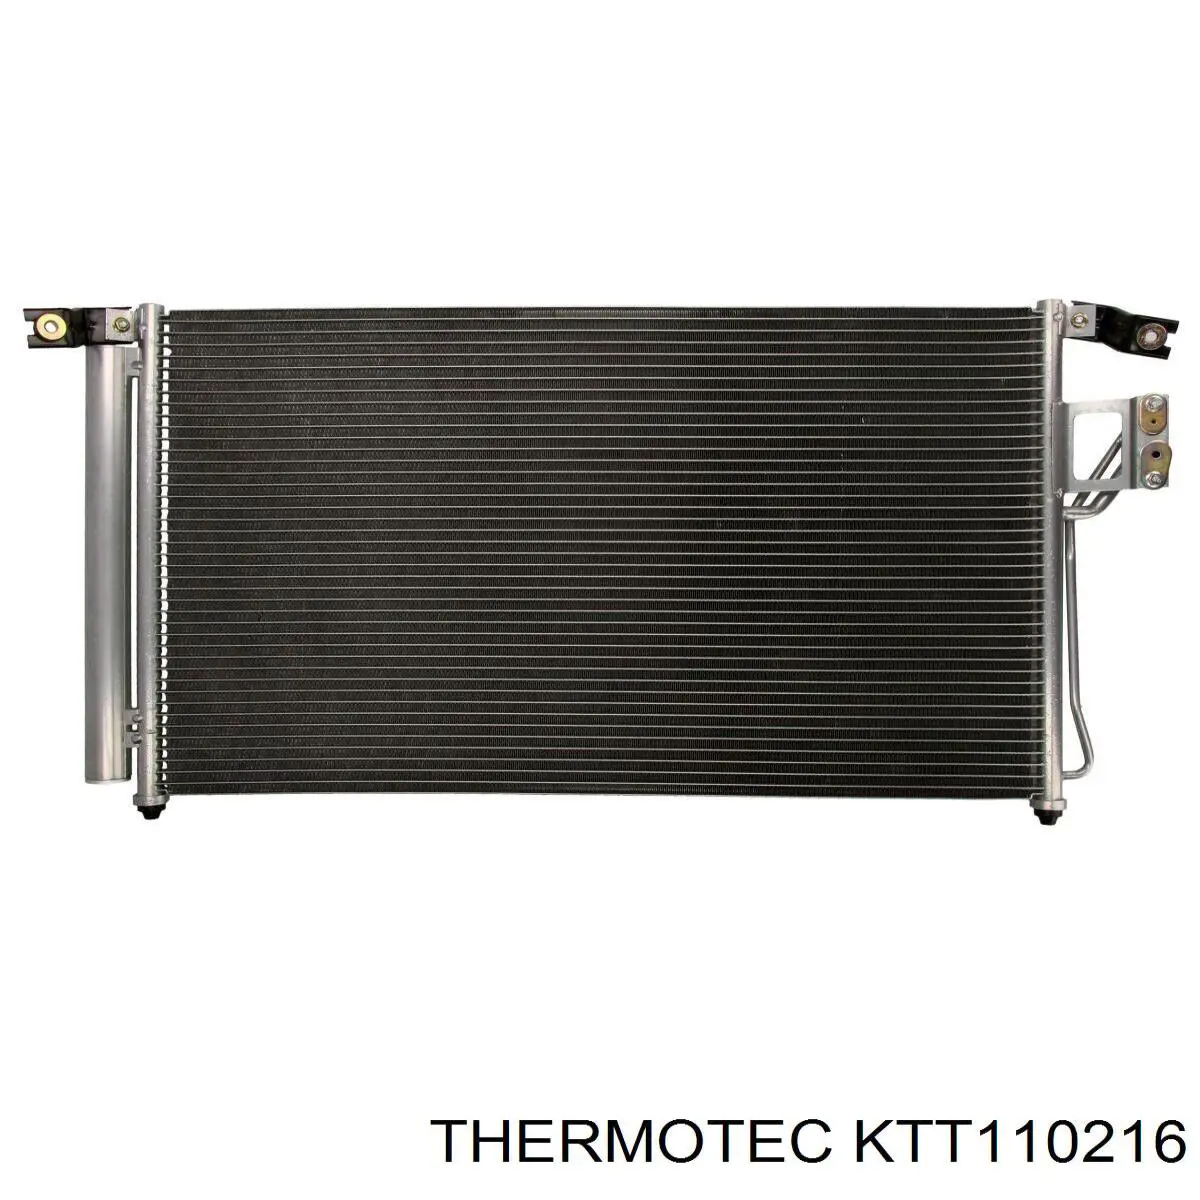 KTT110216 Thermotec condensador aire acondicionado